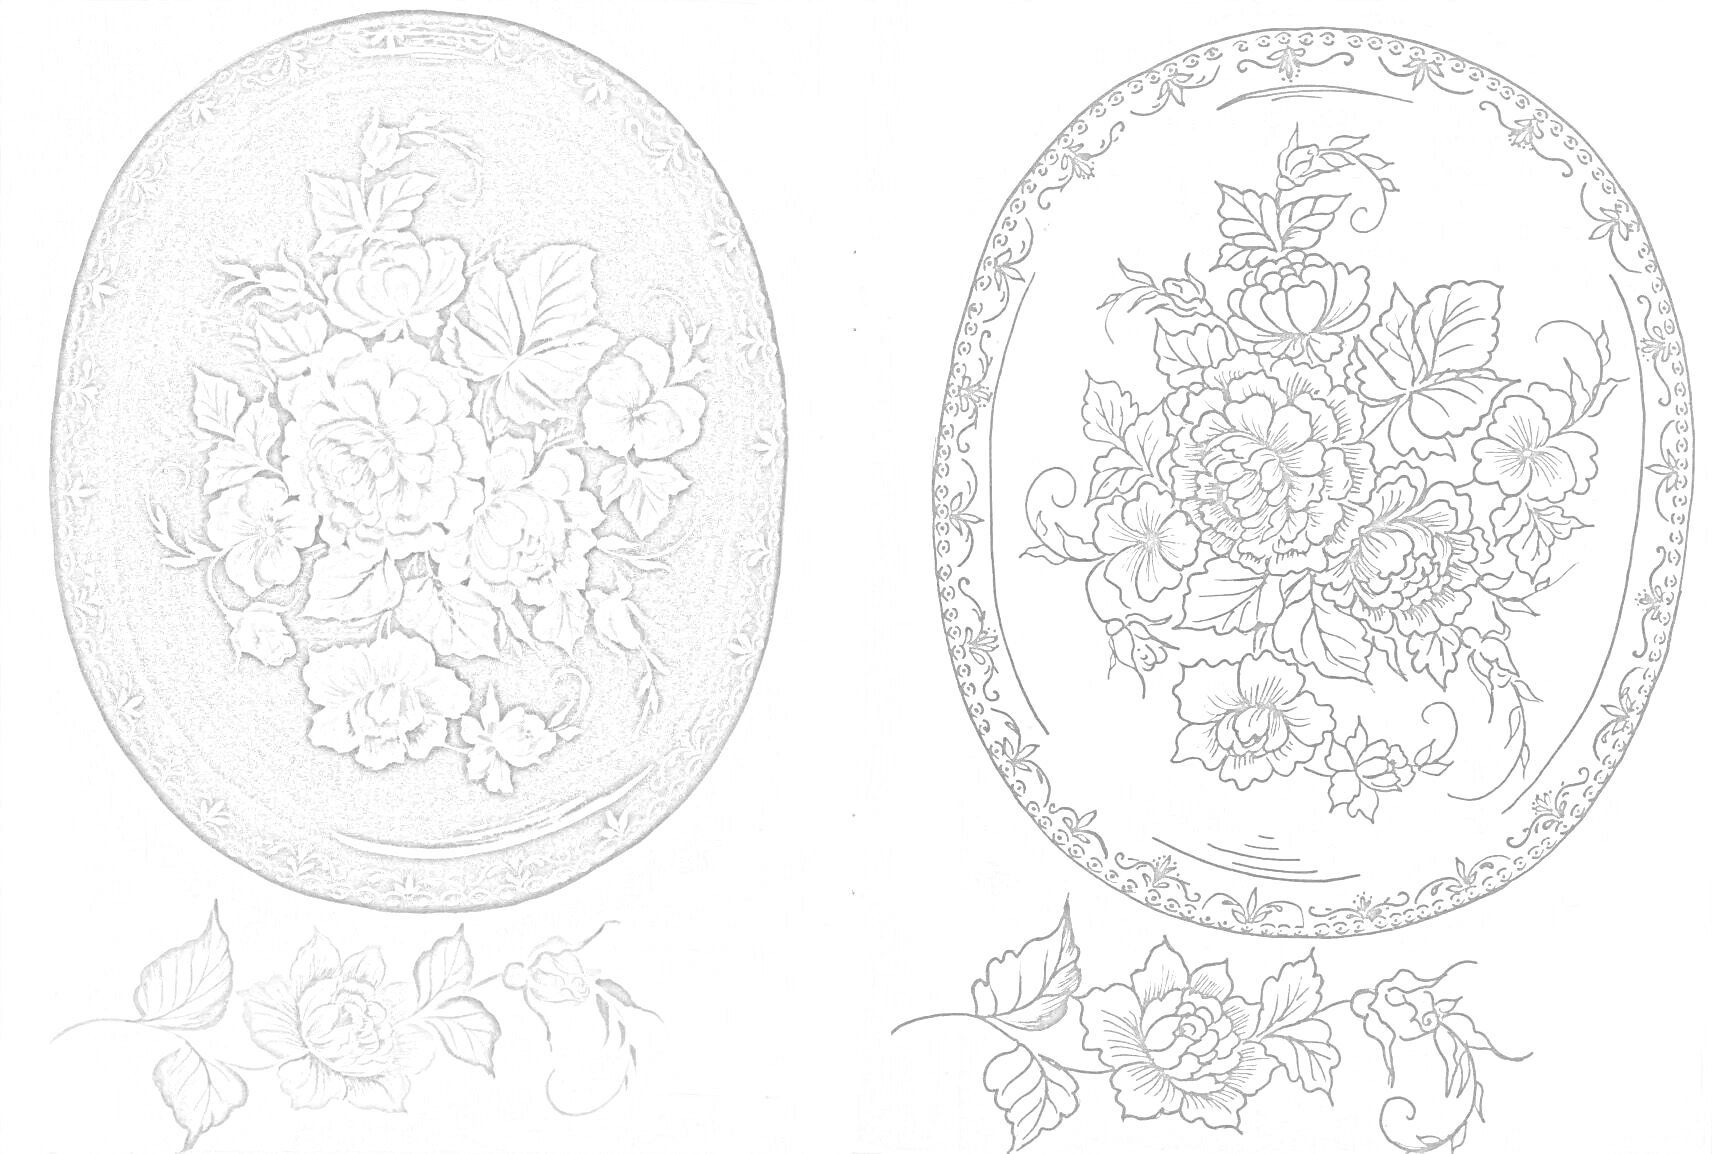 Жостовская роспись на овальном металле с центральным элементом в виде букетов крупных цветов, с малым количеством листьев и бутонов по краям